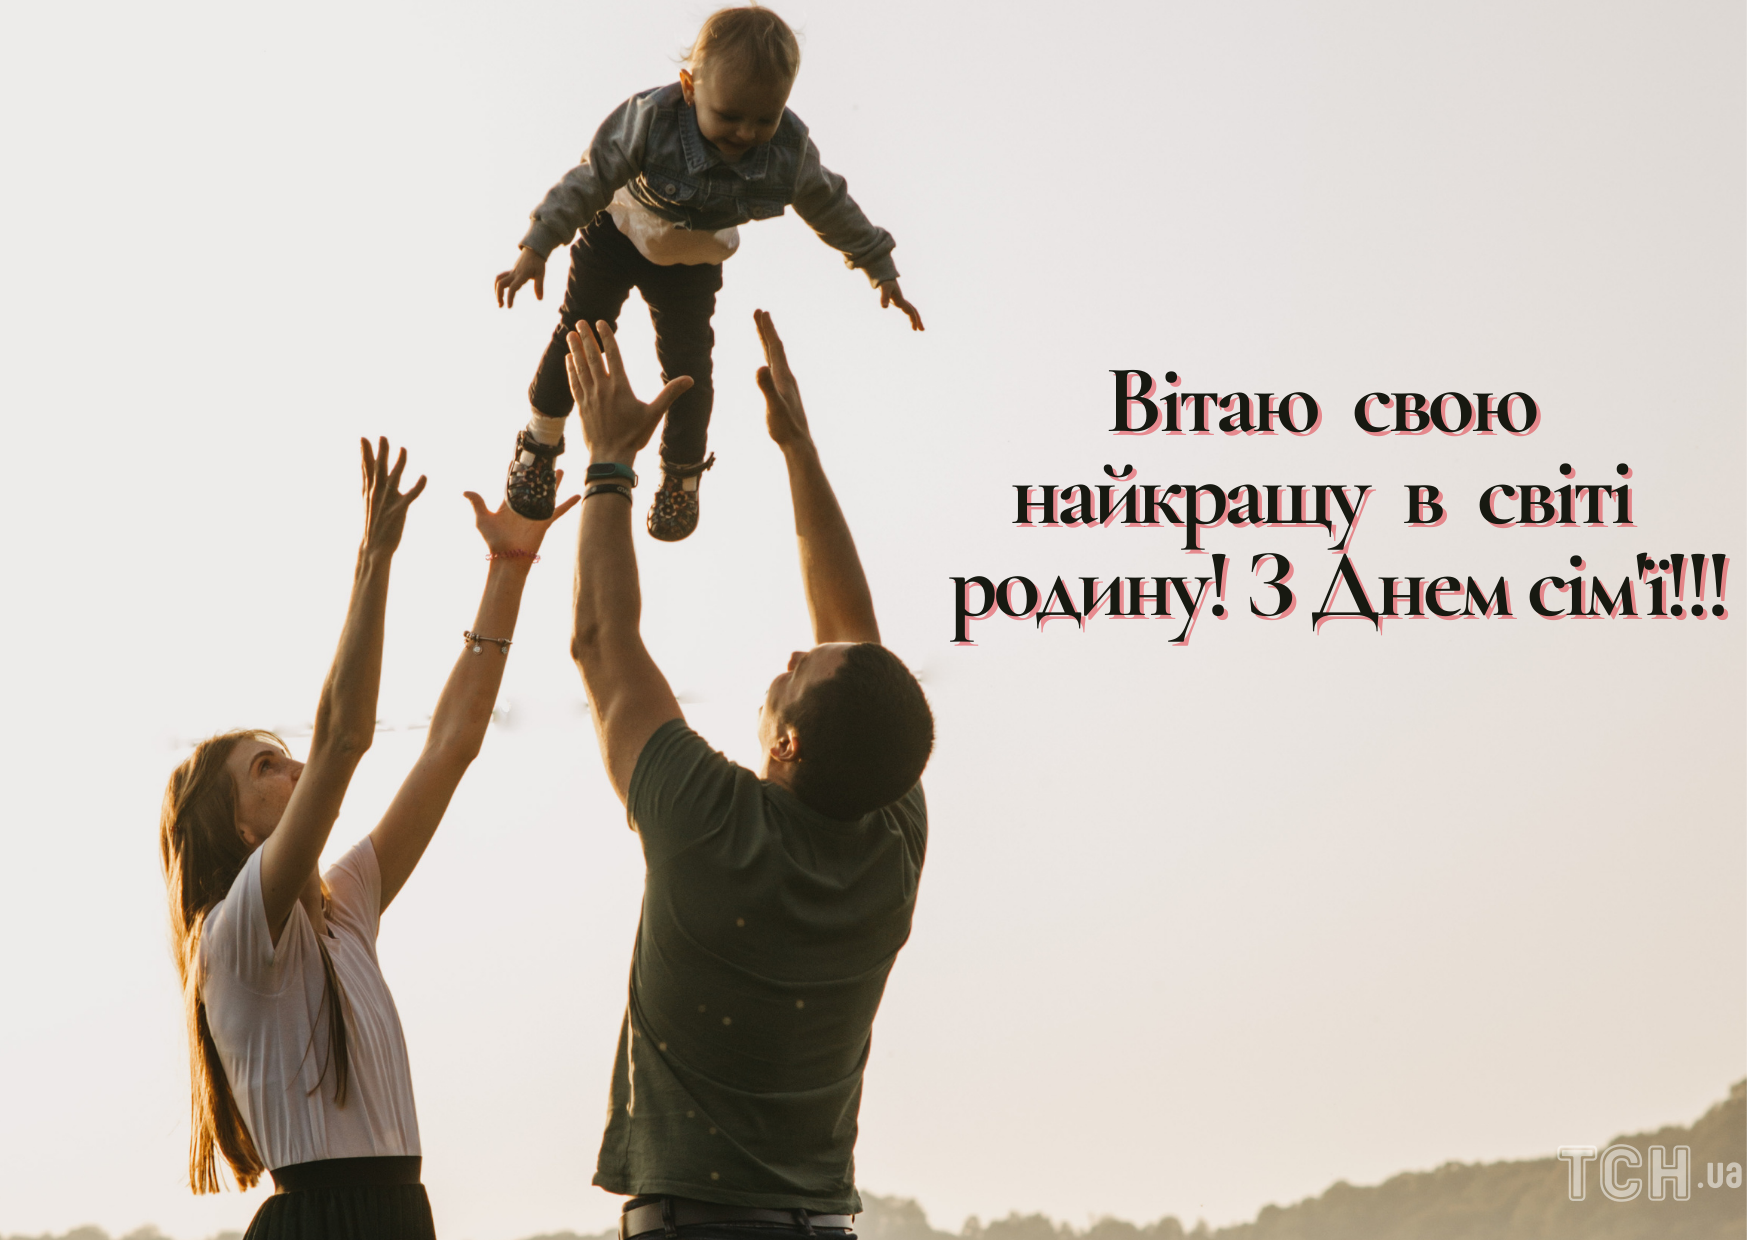 Международный день семьи: картинки / © ТСН.ua